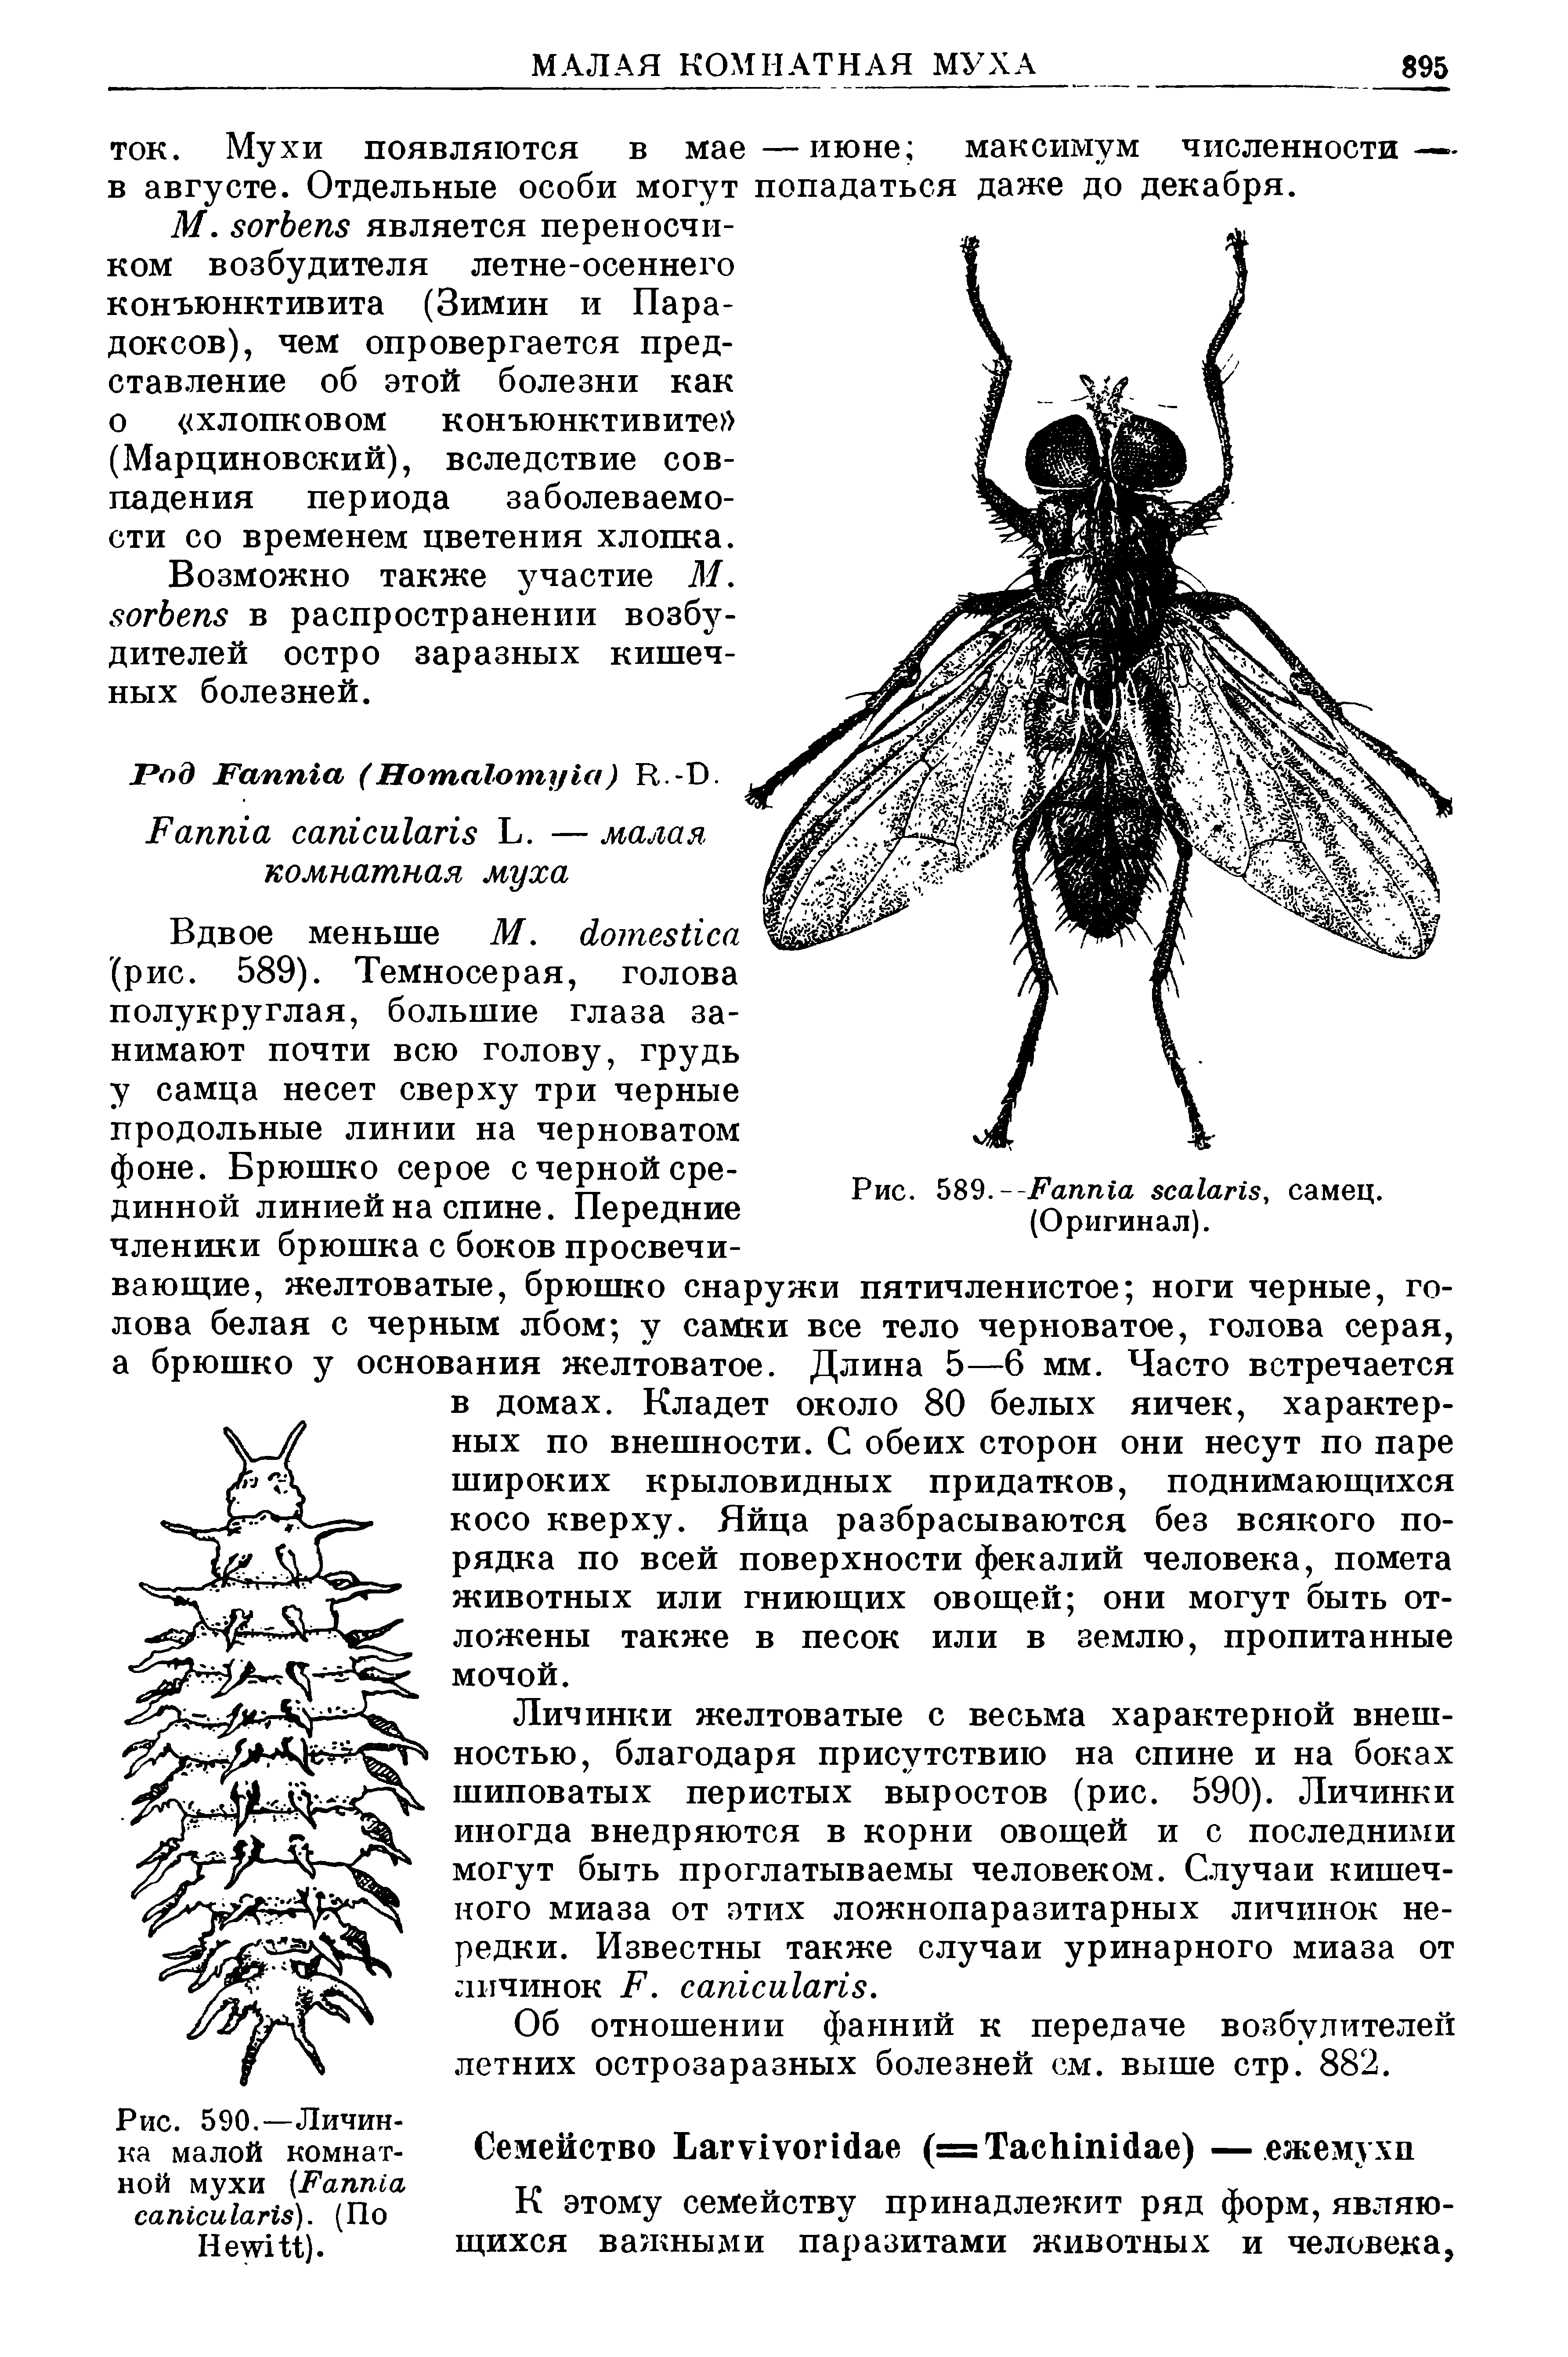 Рис. 590.—Личинка малой комнатной мухи (F ). (По H ).